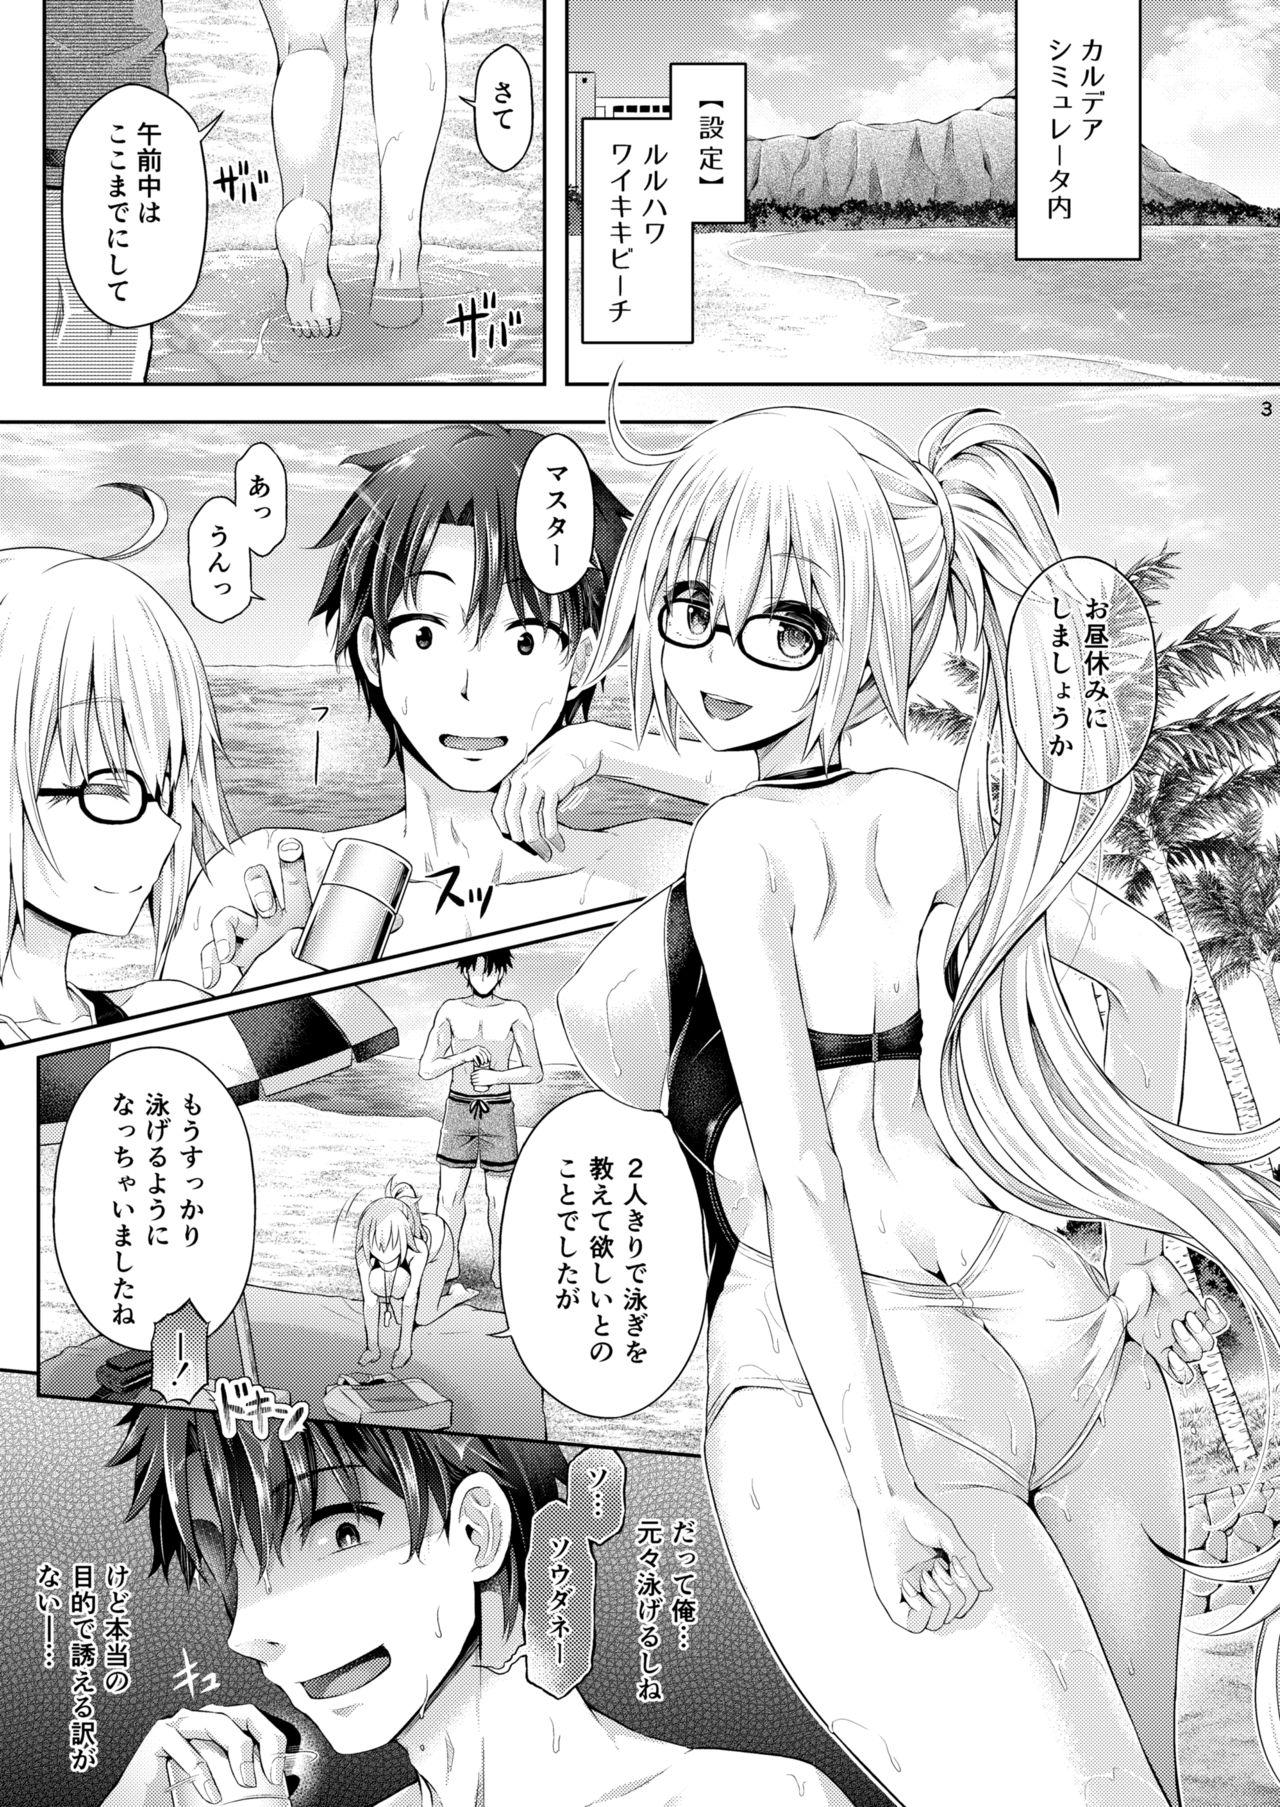 Rough Sex [Taniguchi-san] Kimi -Jeanne- ni Naru 2.0 (Fate/Grand Order) - Fate grand order Asia - Page 4